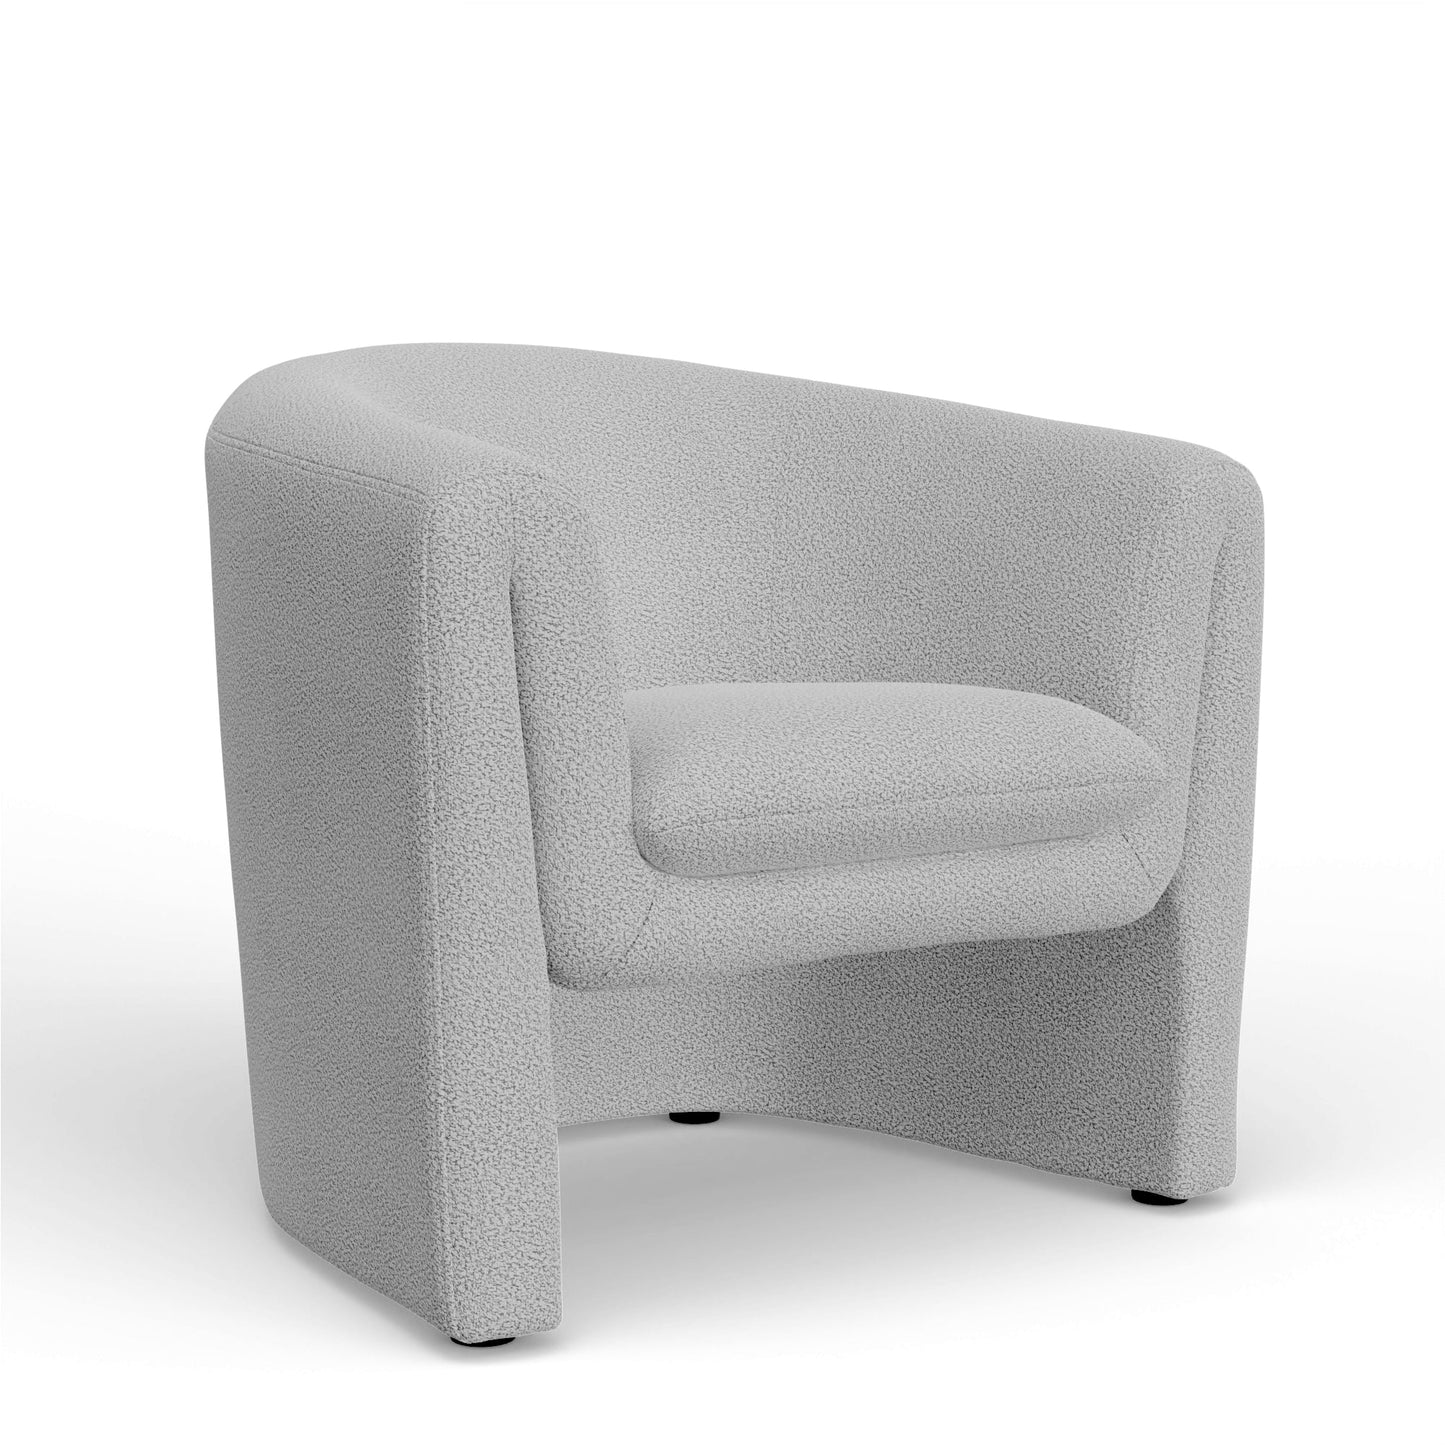 Tori Accent Chair - Alpine Furniture